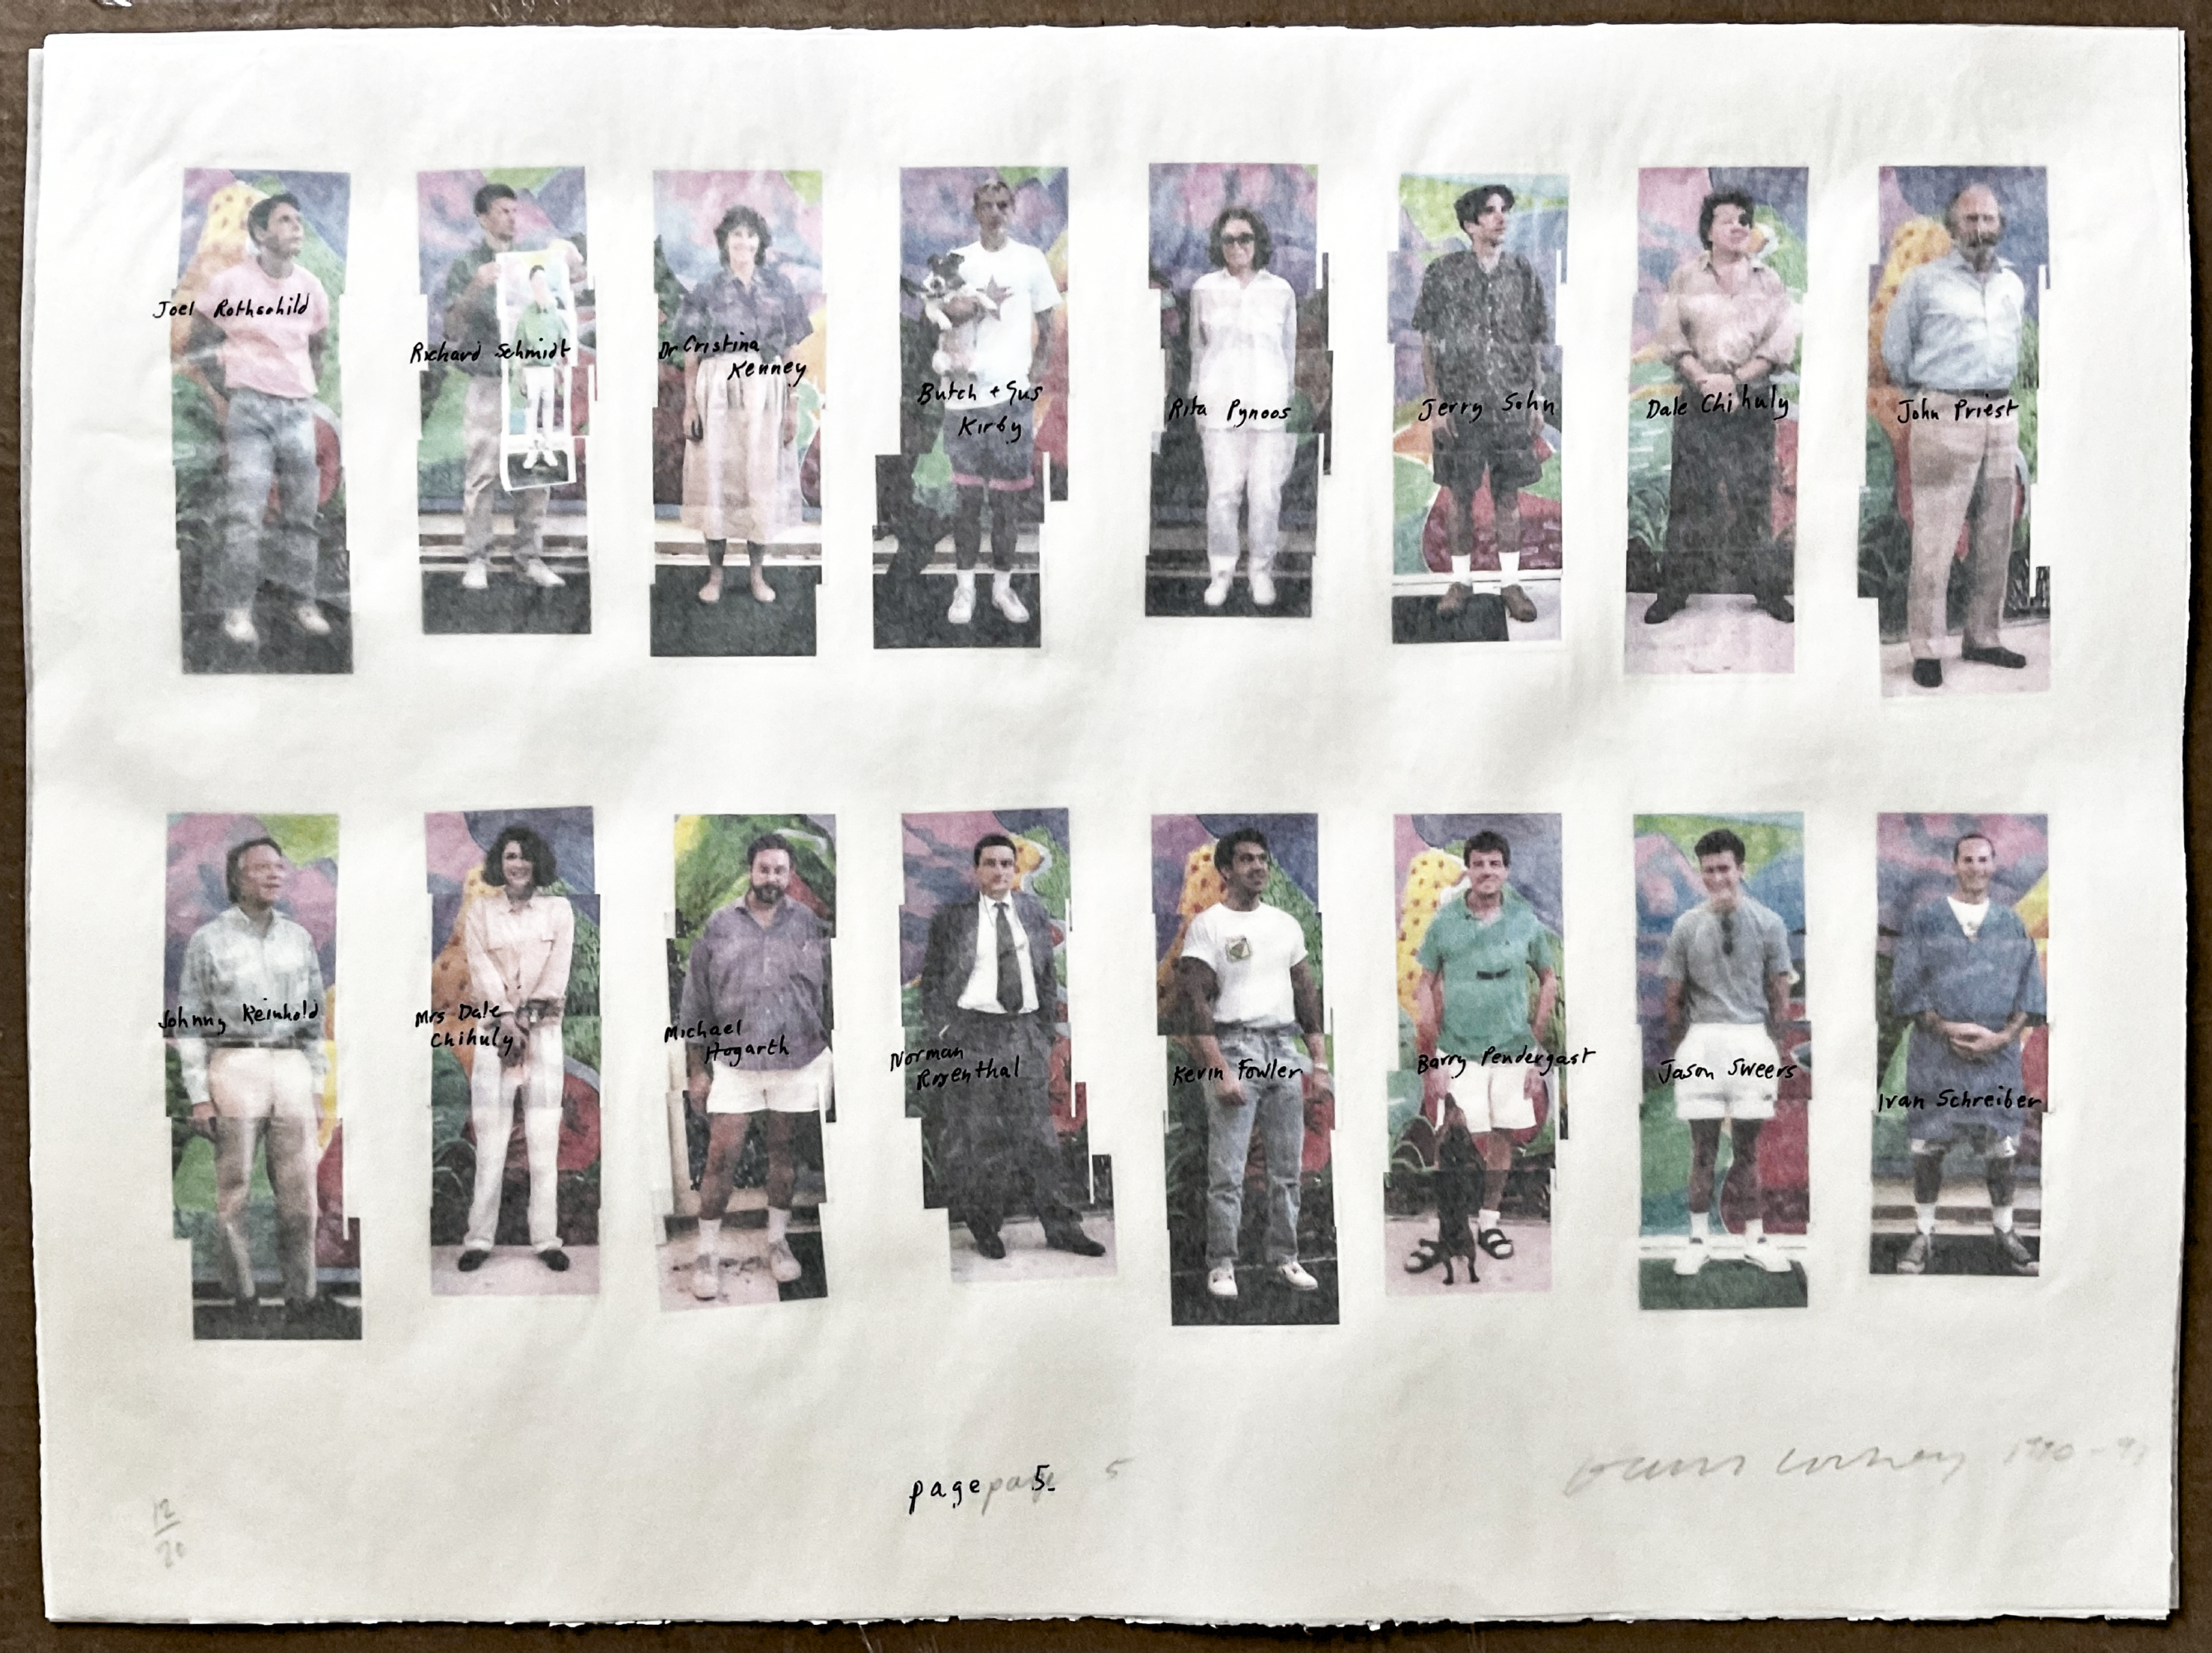 DAVID HOCKNEY (born 1937), LA Visitors, colour laser print collage, printed on parsons linen laser